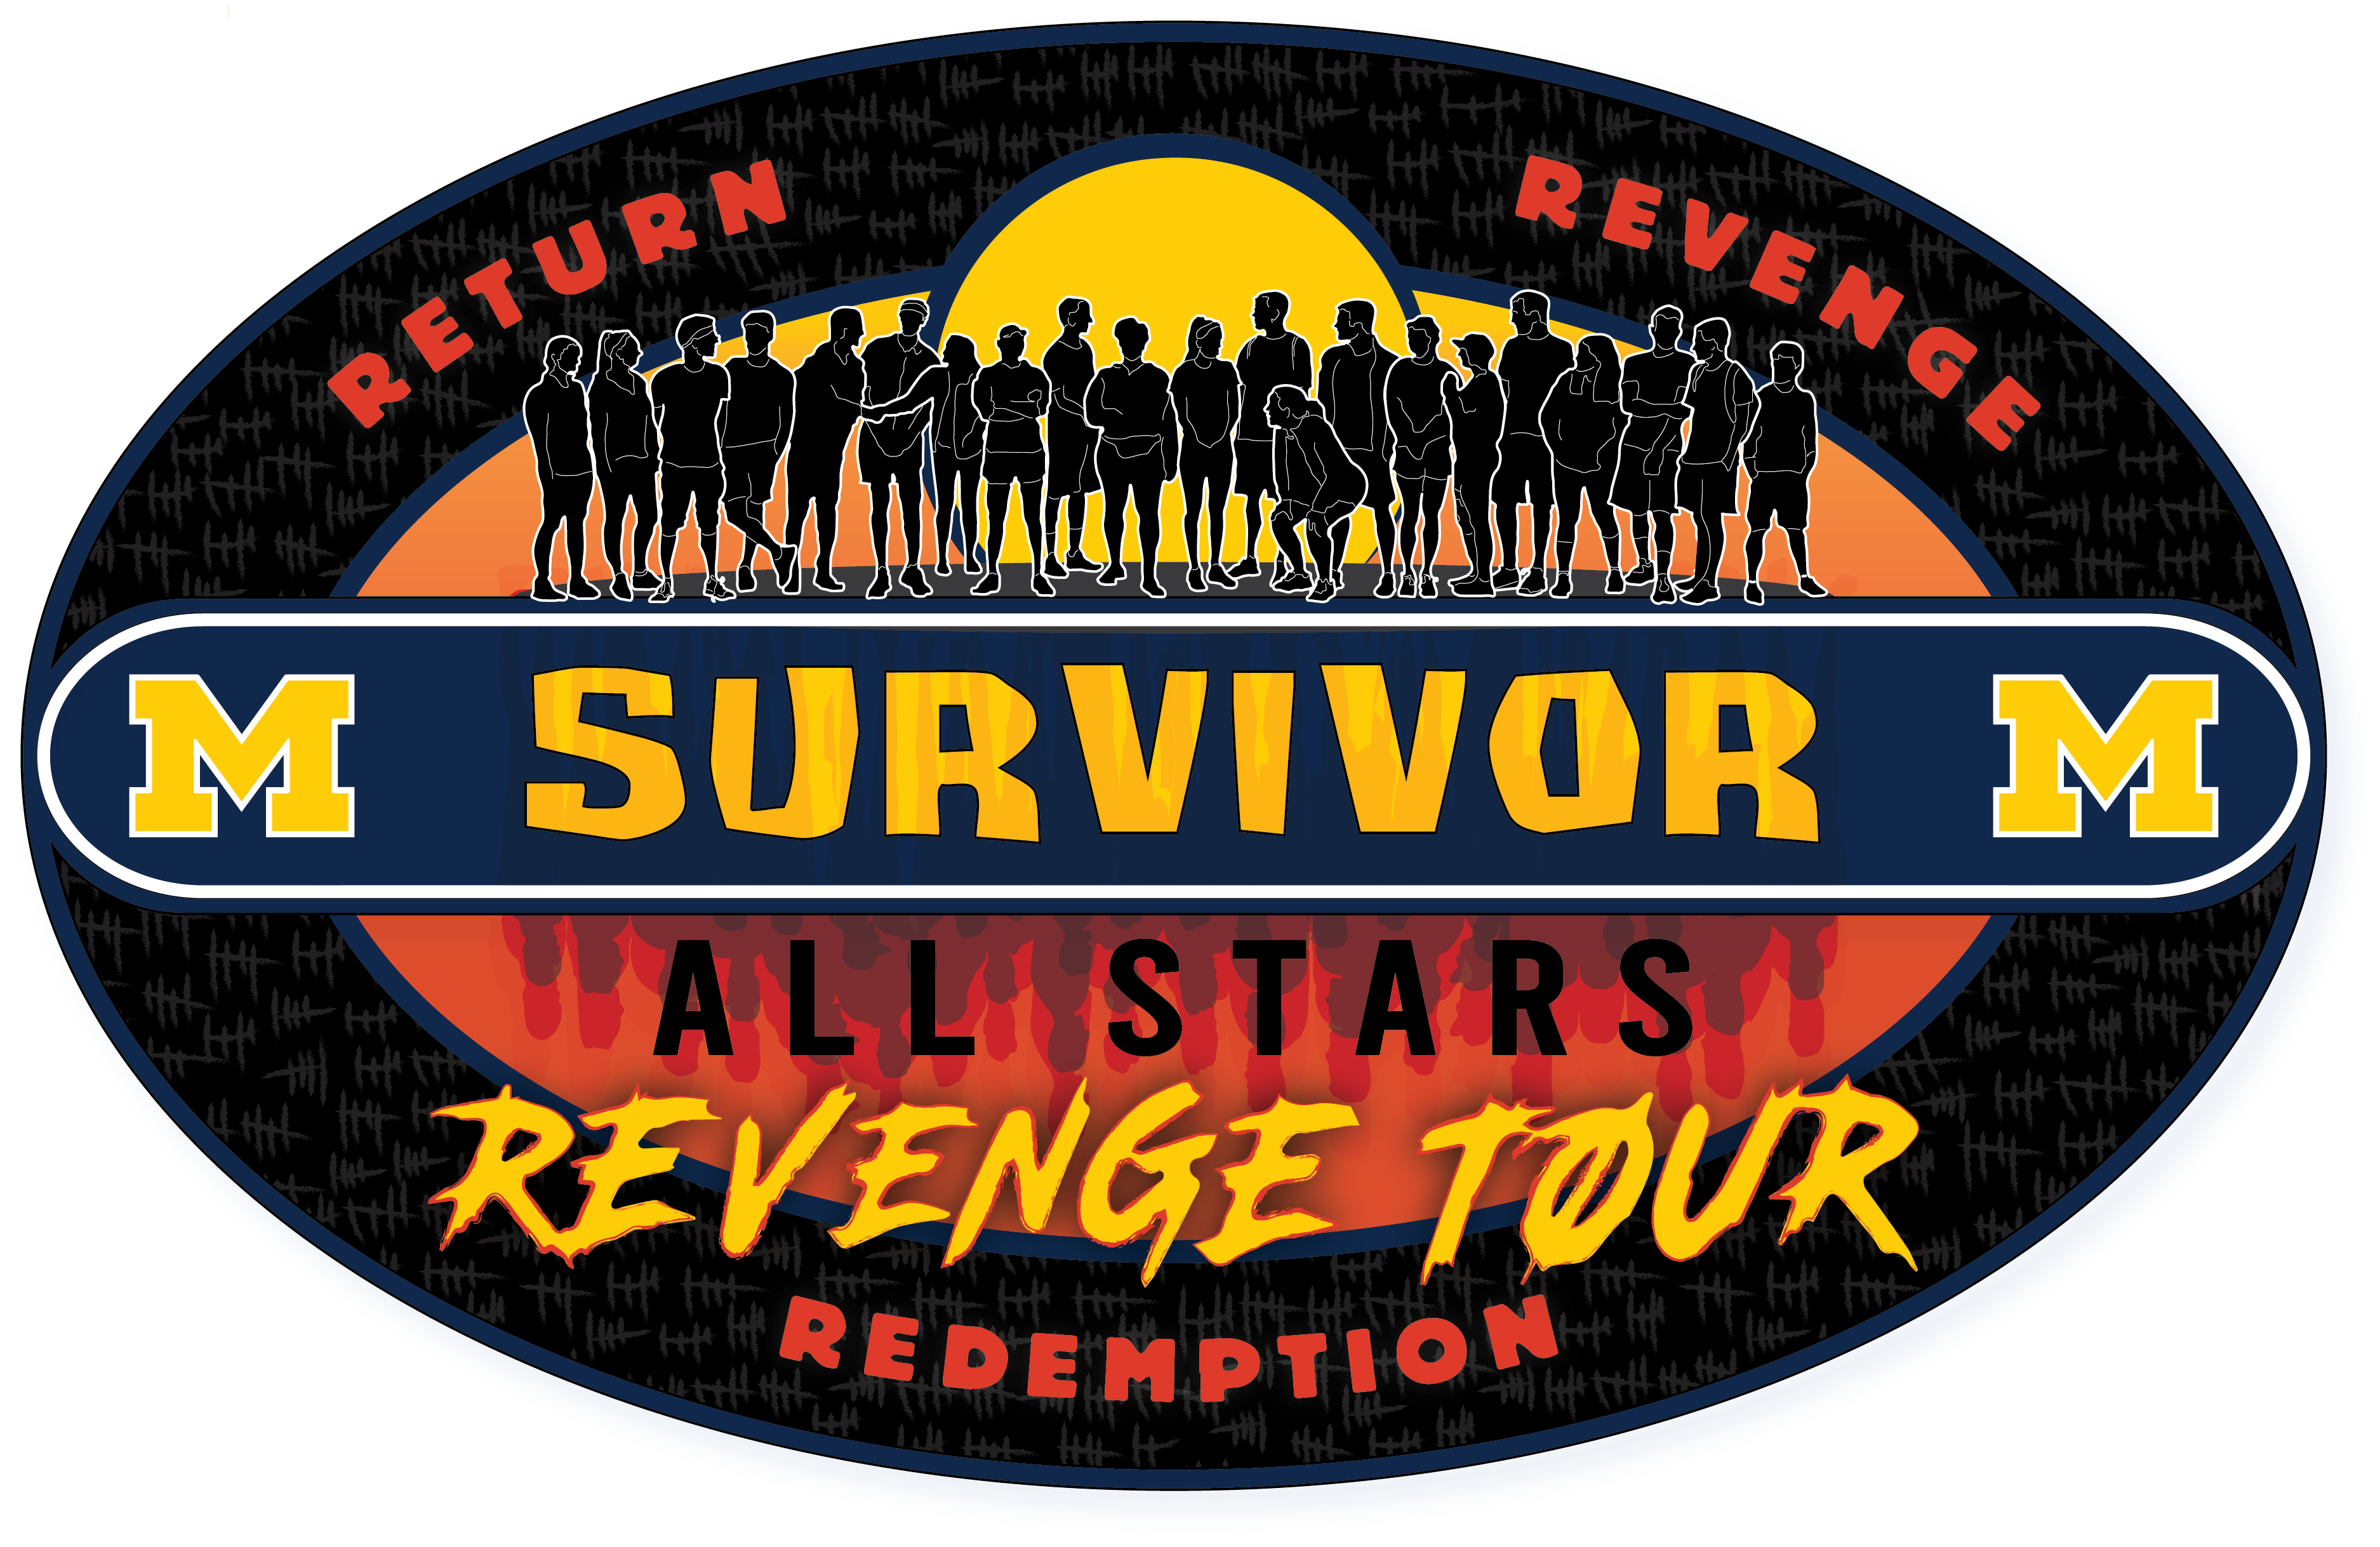 All Stars Revenge Tour